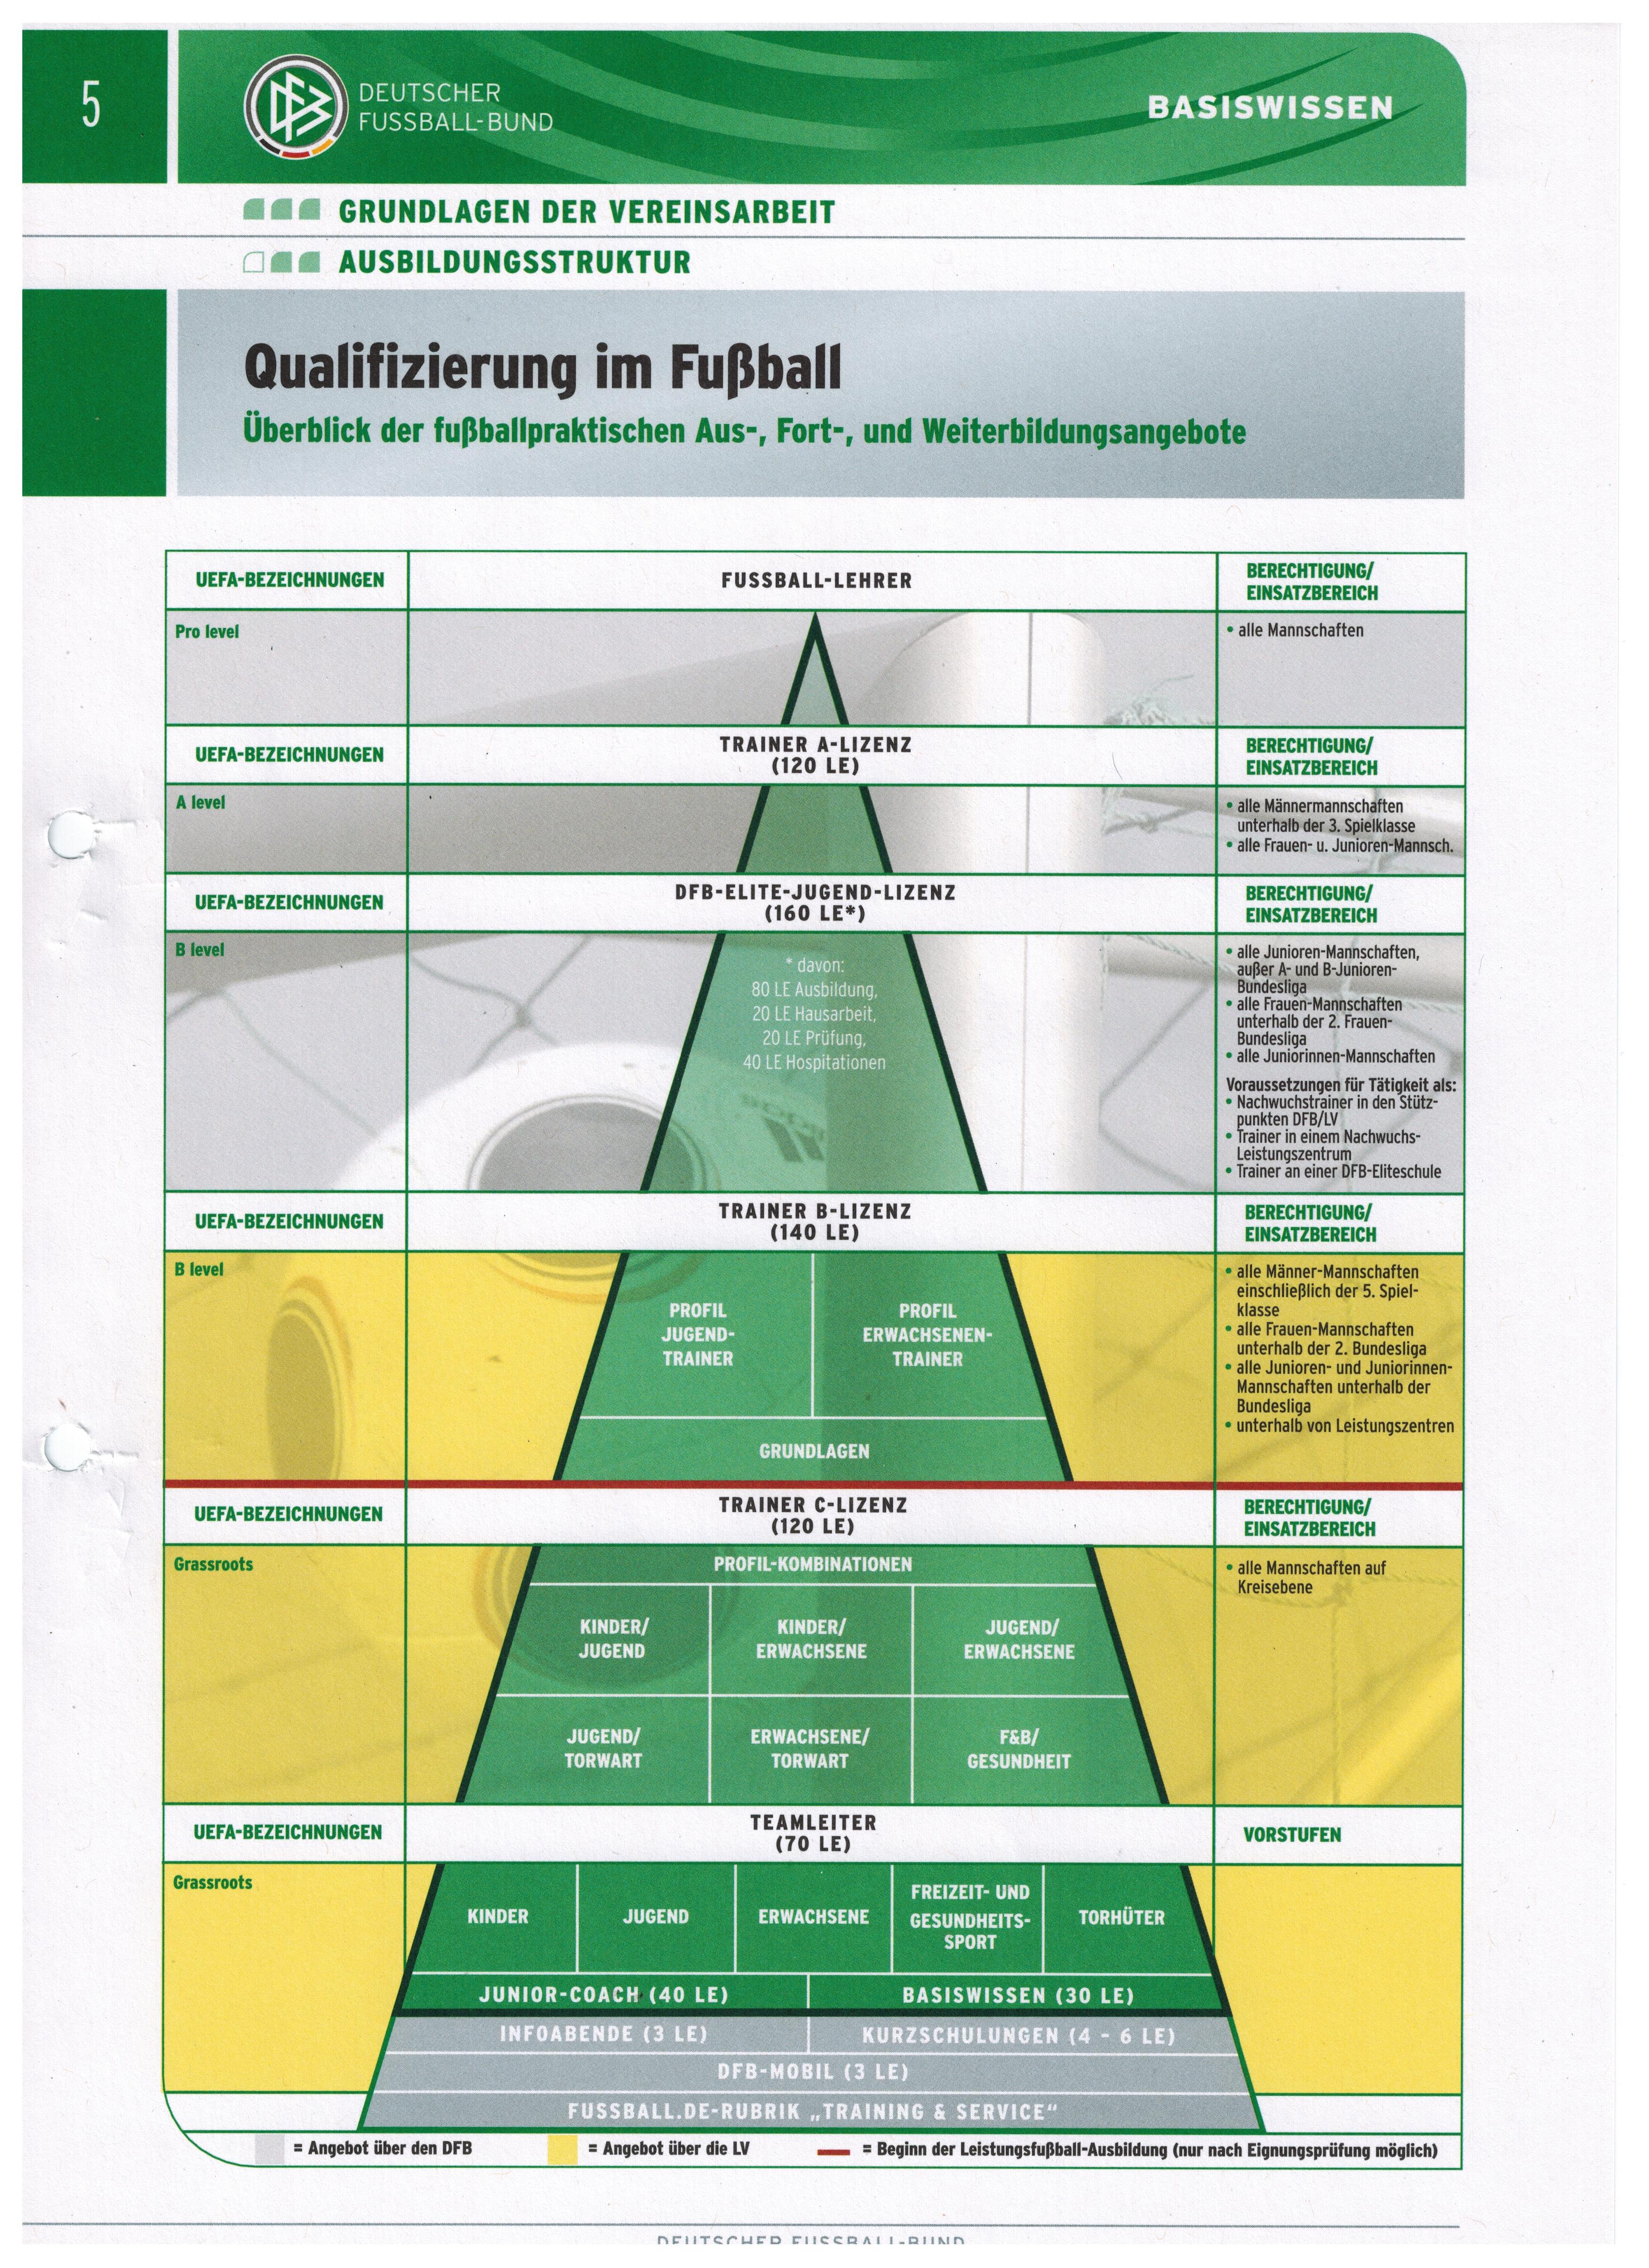 схема обучения на тренера в Германии представляет собой следующую пирамиду